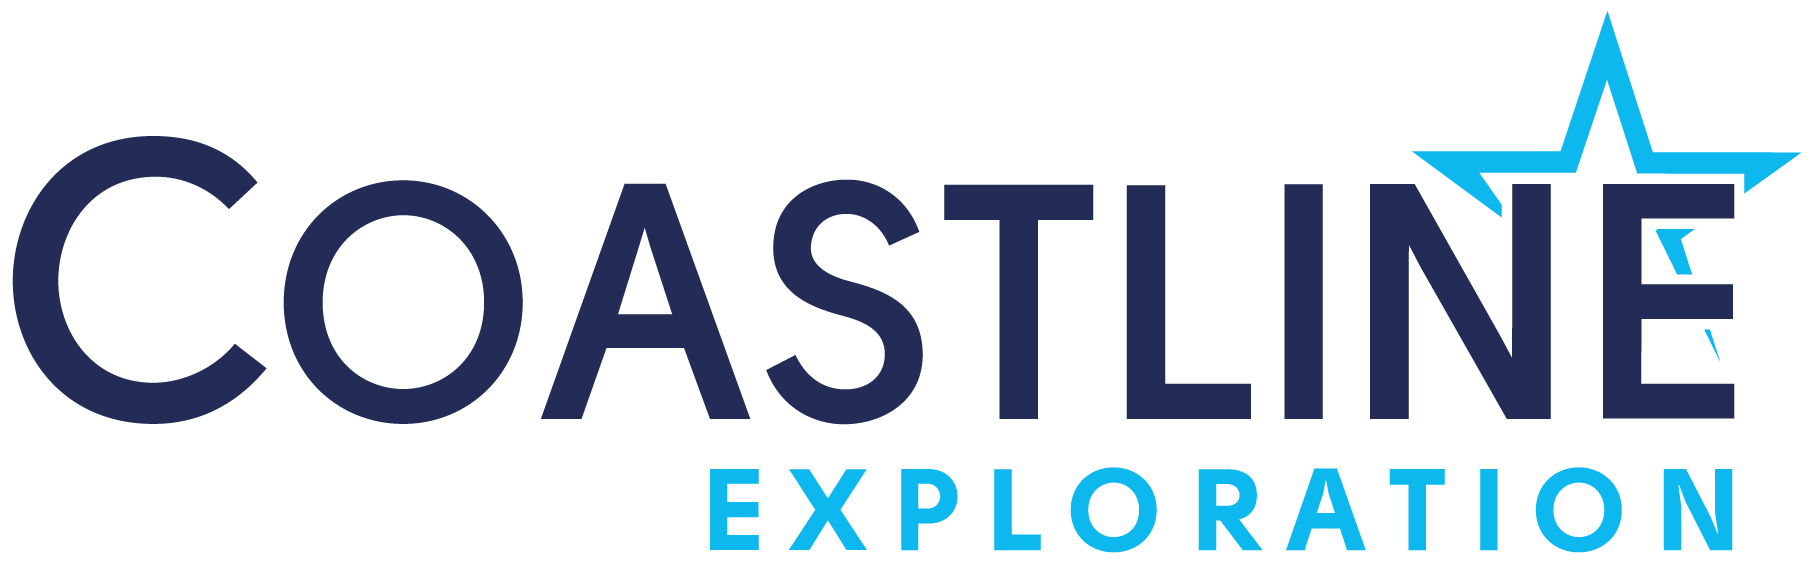 Coastline Exploration Limited